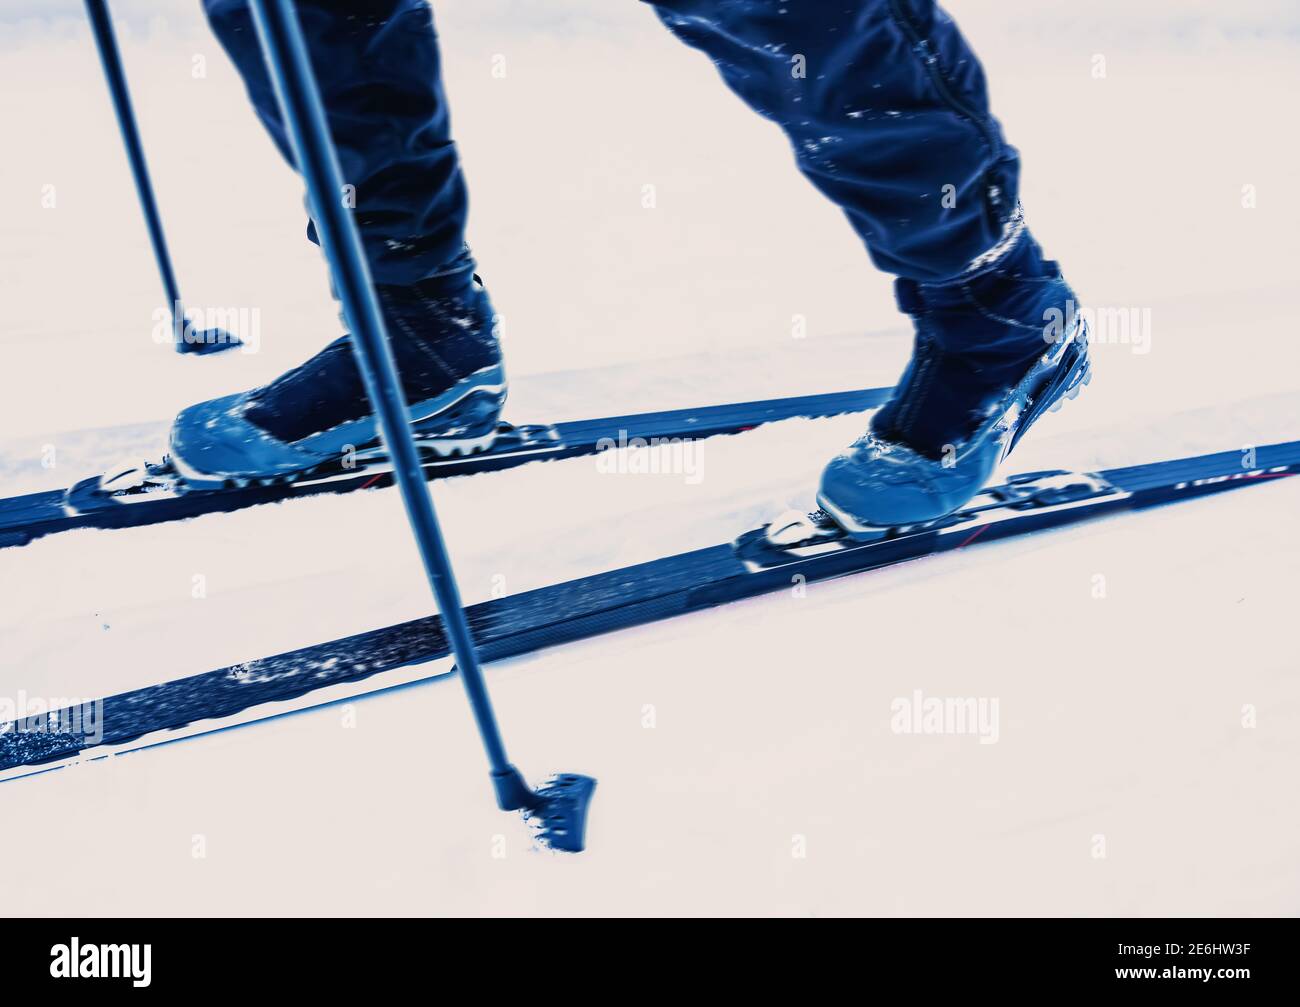 Esquí de fondo. Primeros planos de y esquís en movimiento con velocidad borrosa Fotografía de stock - Alamy